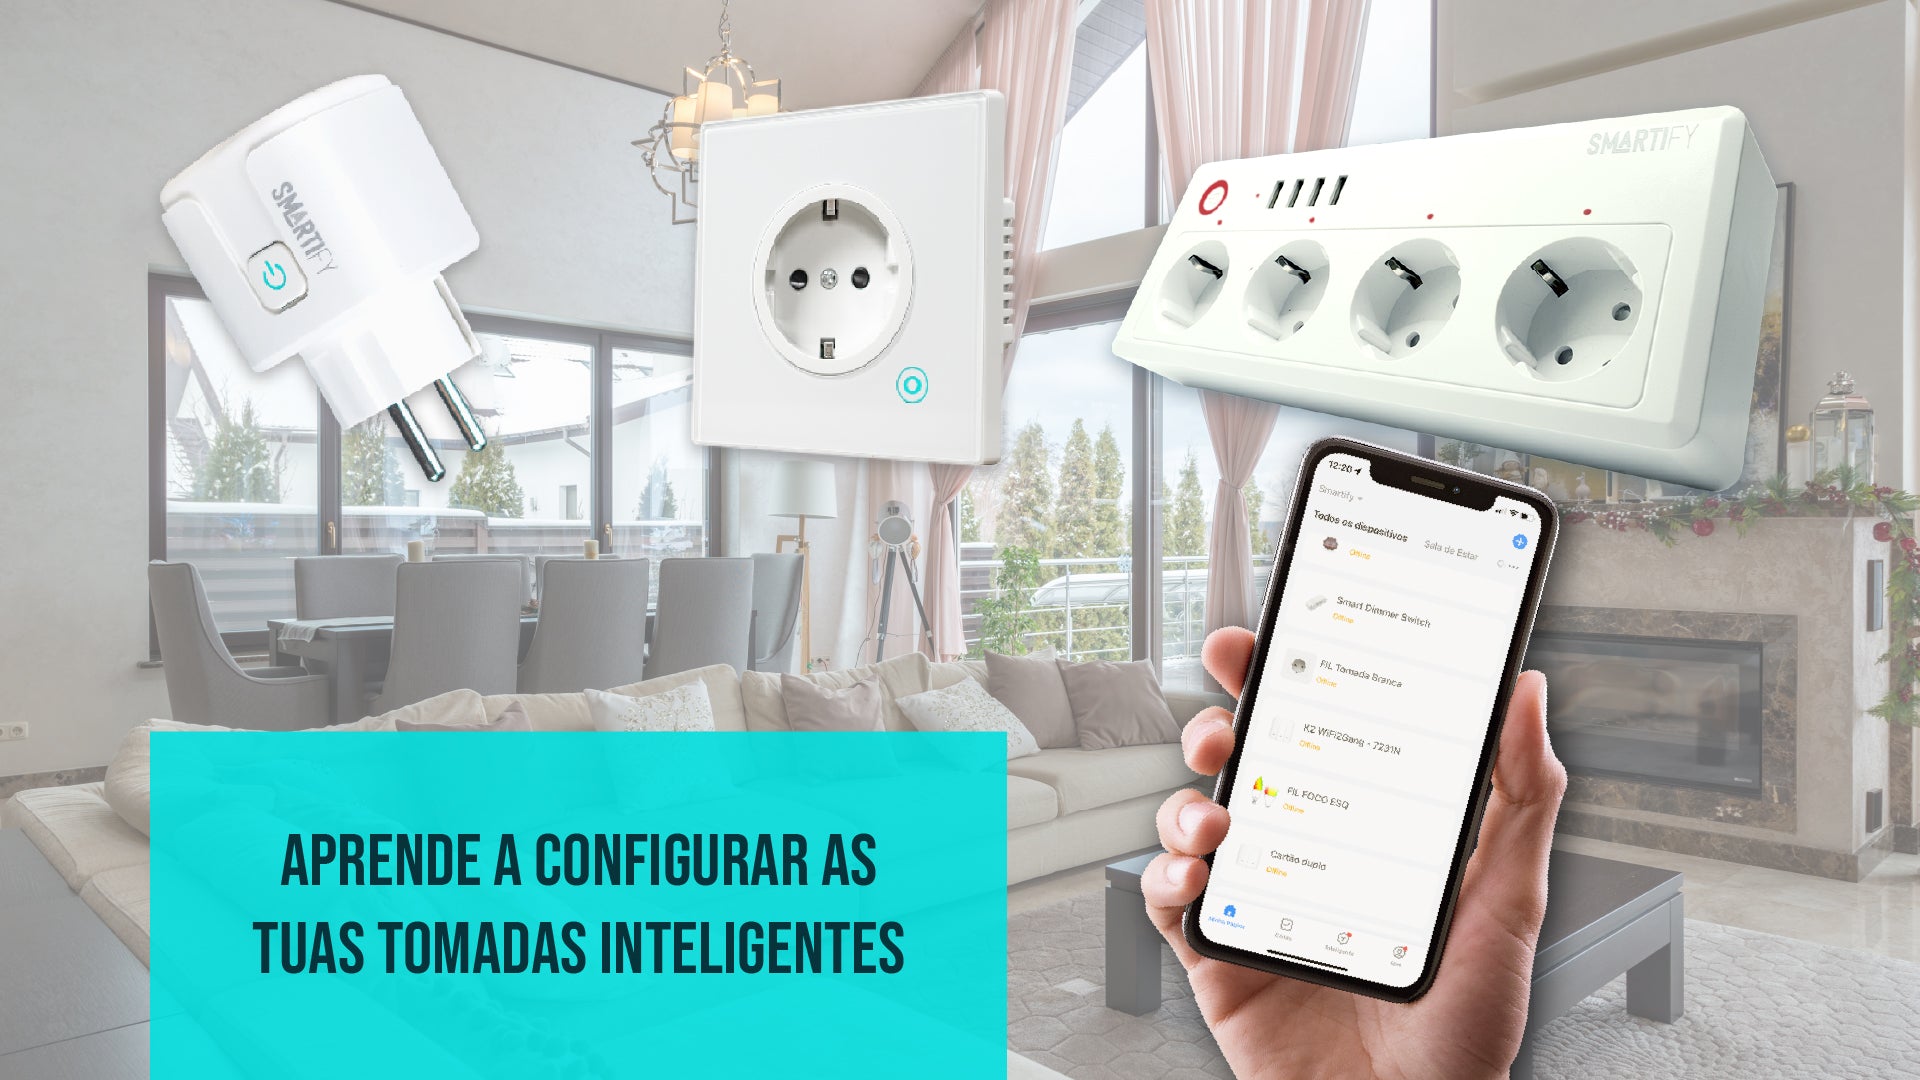 Apagador Tomacorriente Inteligente Wifi Tuya Smartlife 2 Botones Negro - Mi  casa inteligente